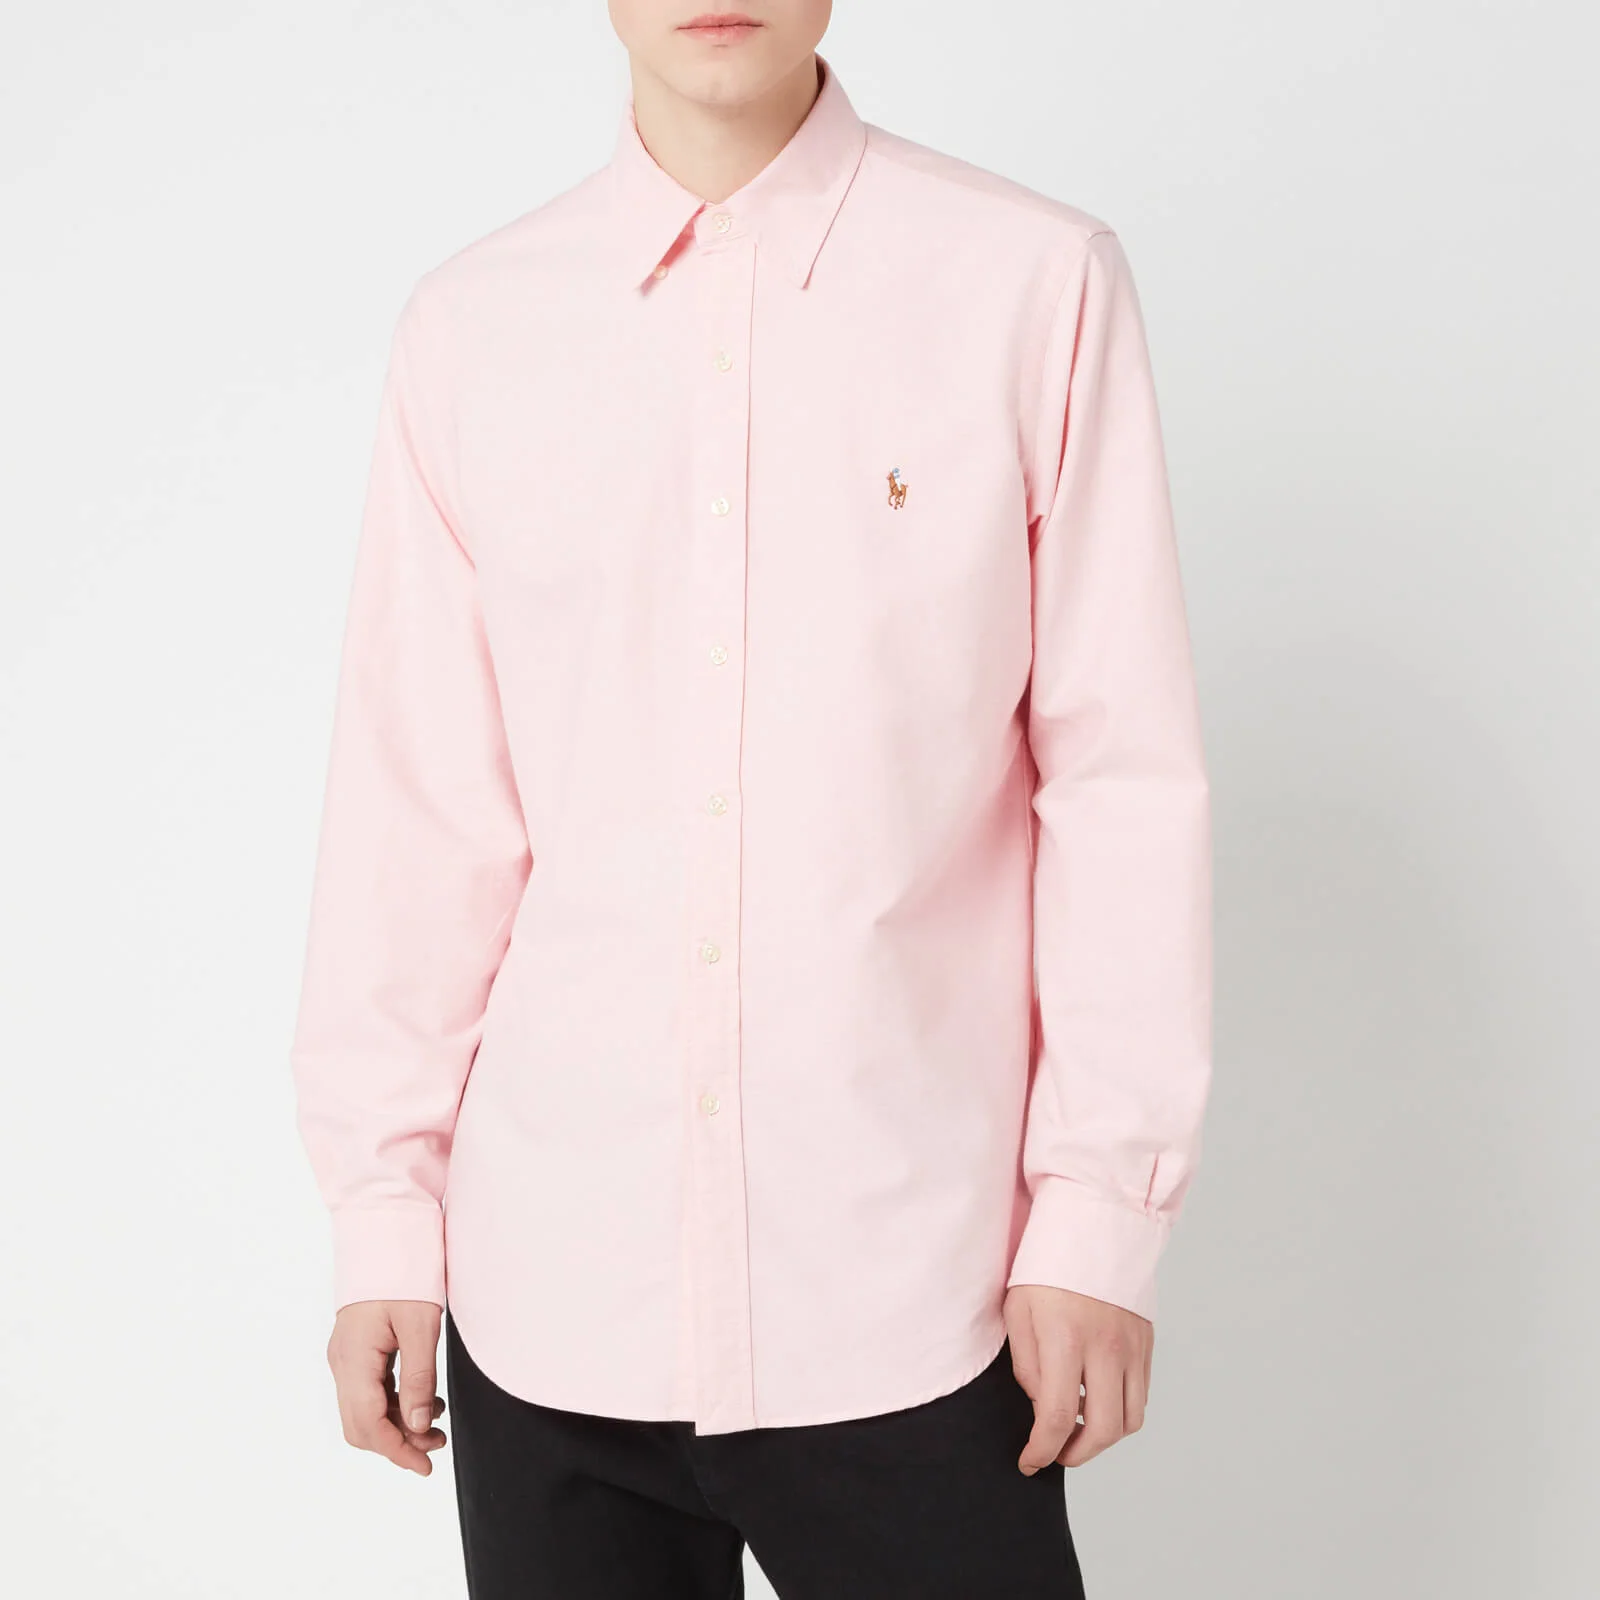 Polo Ralph Lauren Men's Core Fit Shirt - Pink Image 1